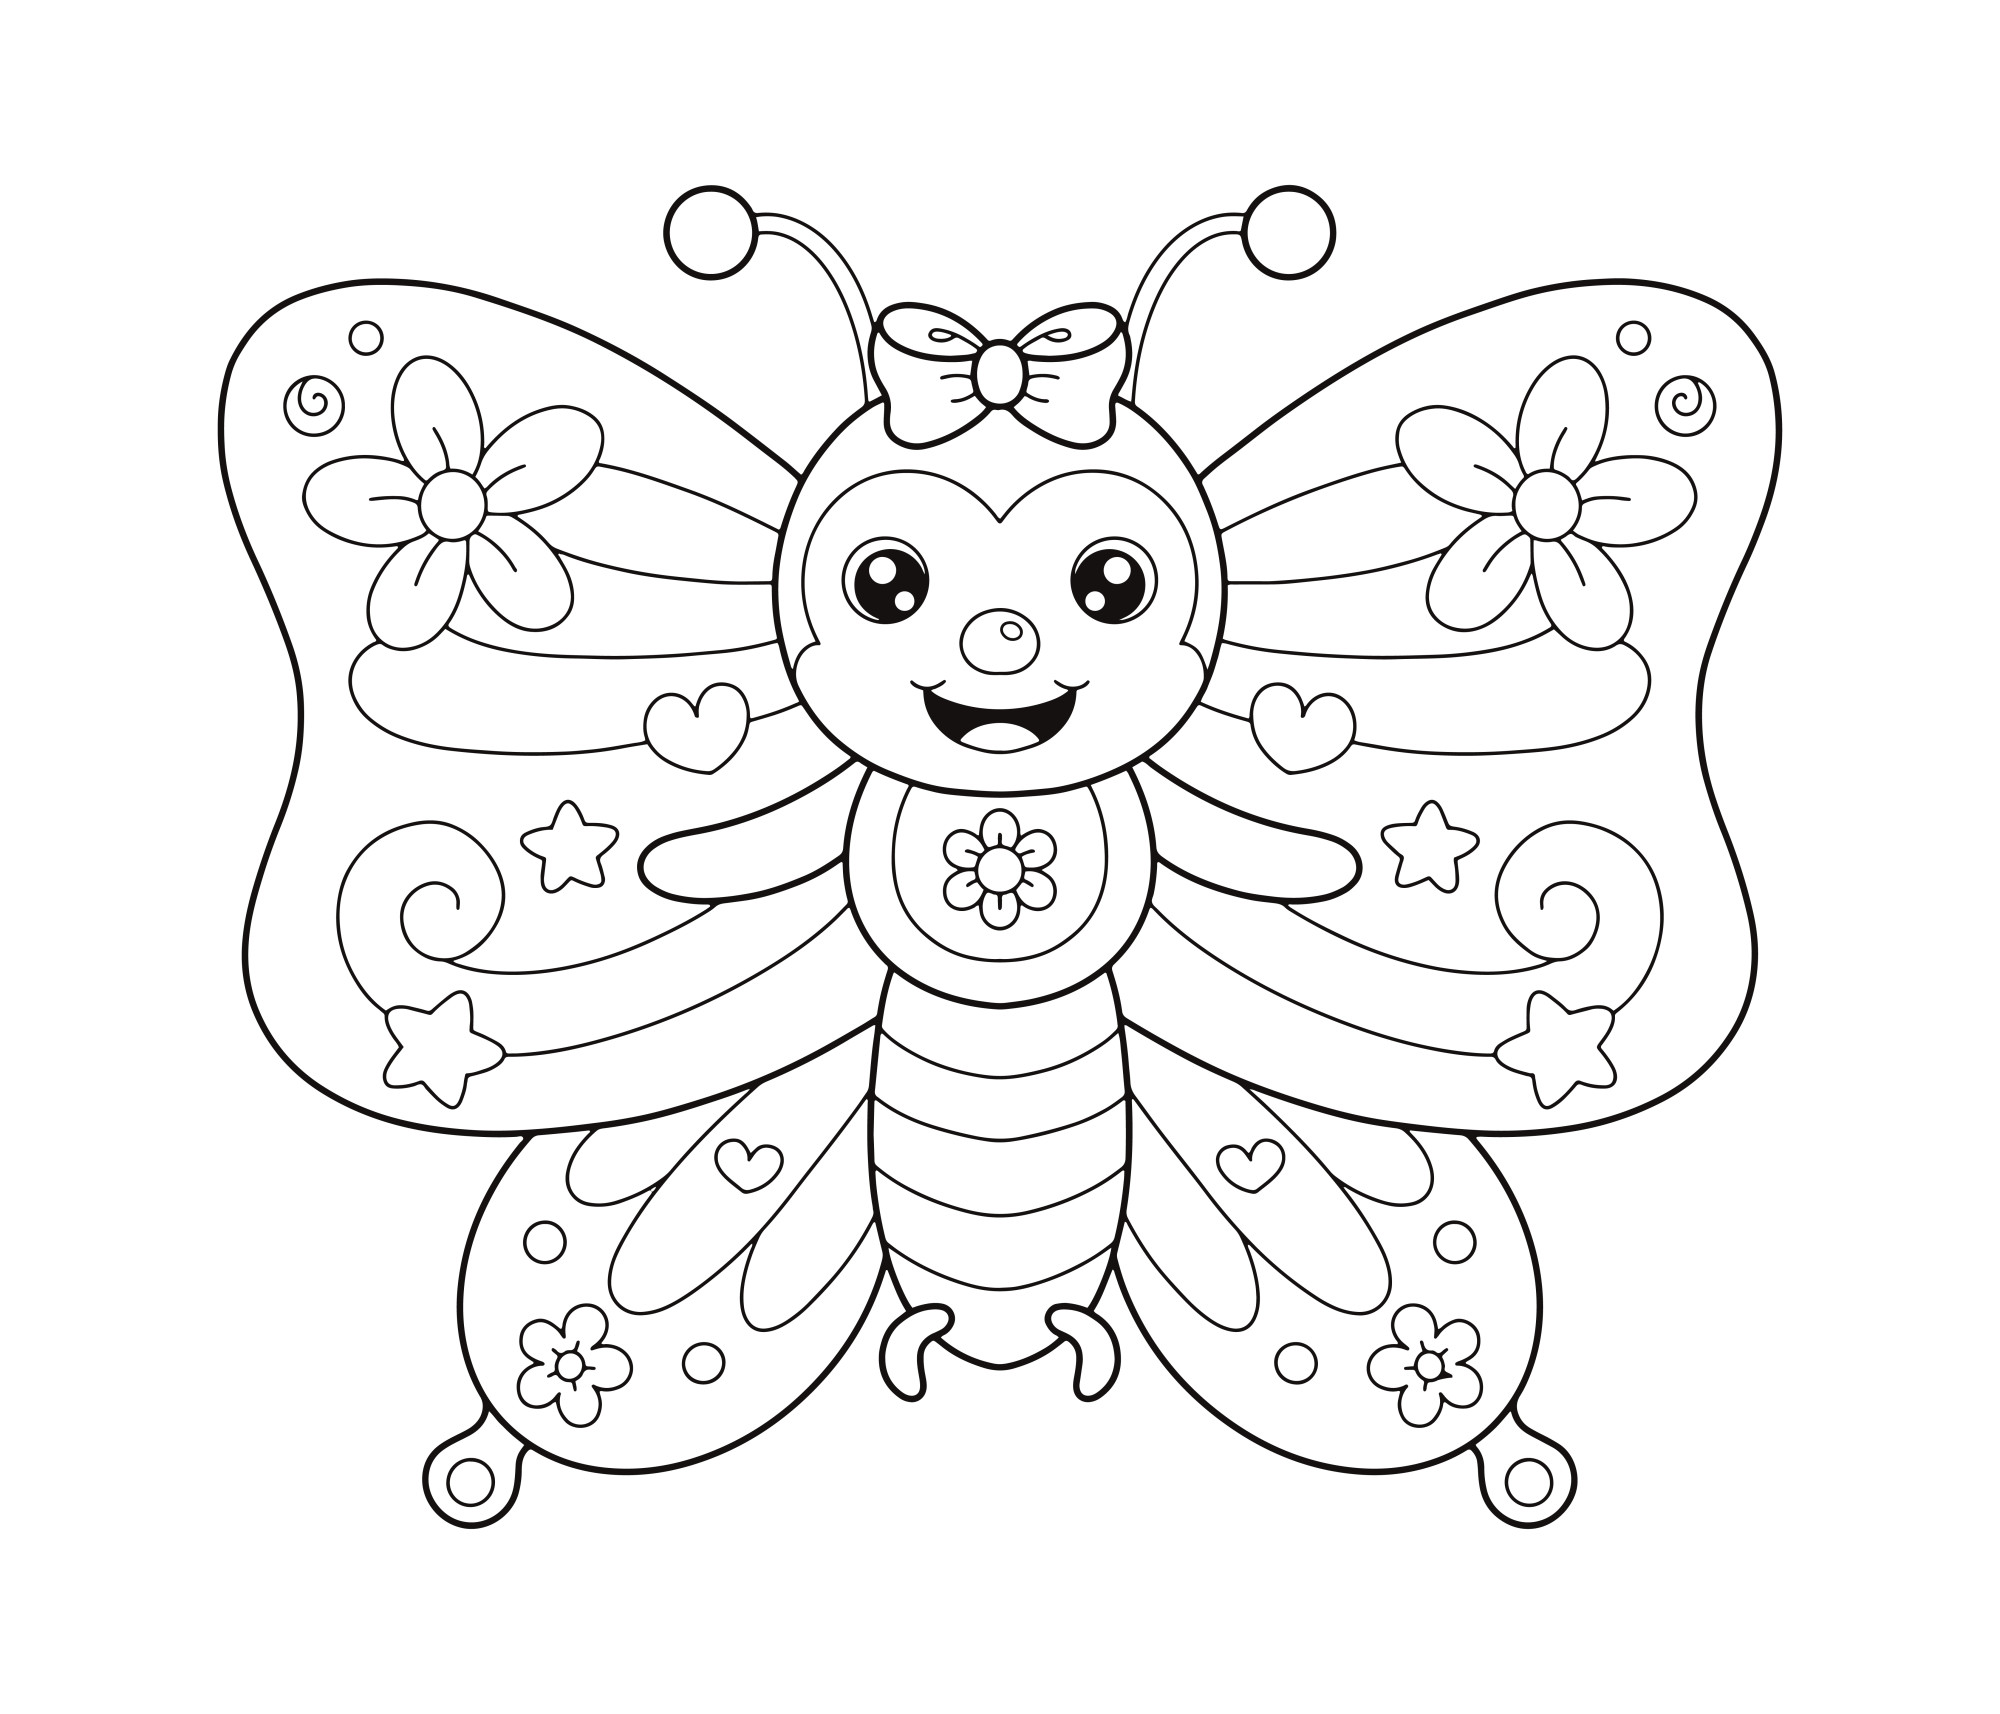 Раскраска для детей: мультяшная бабочка с цветочками на крыльях